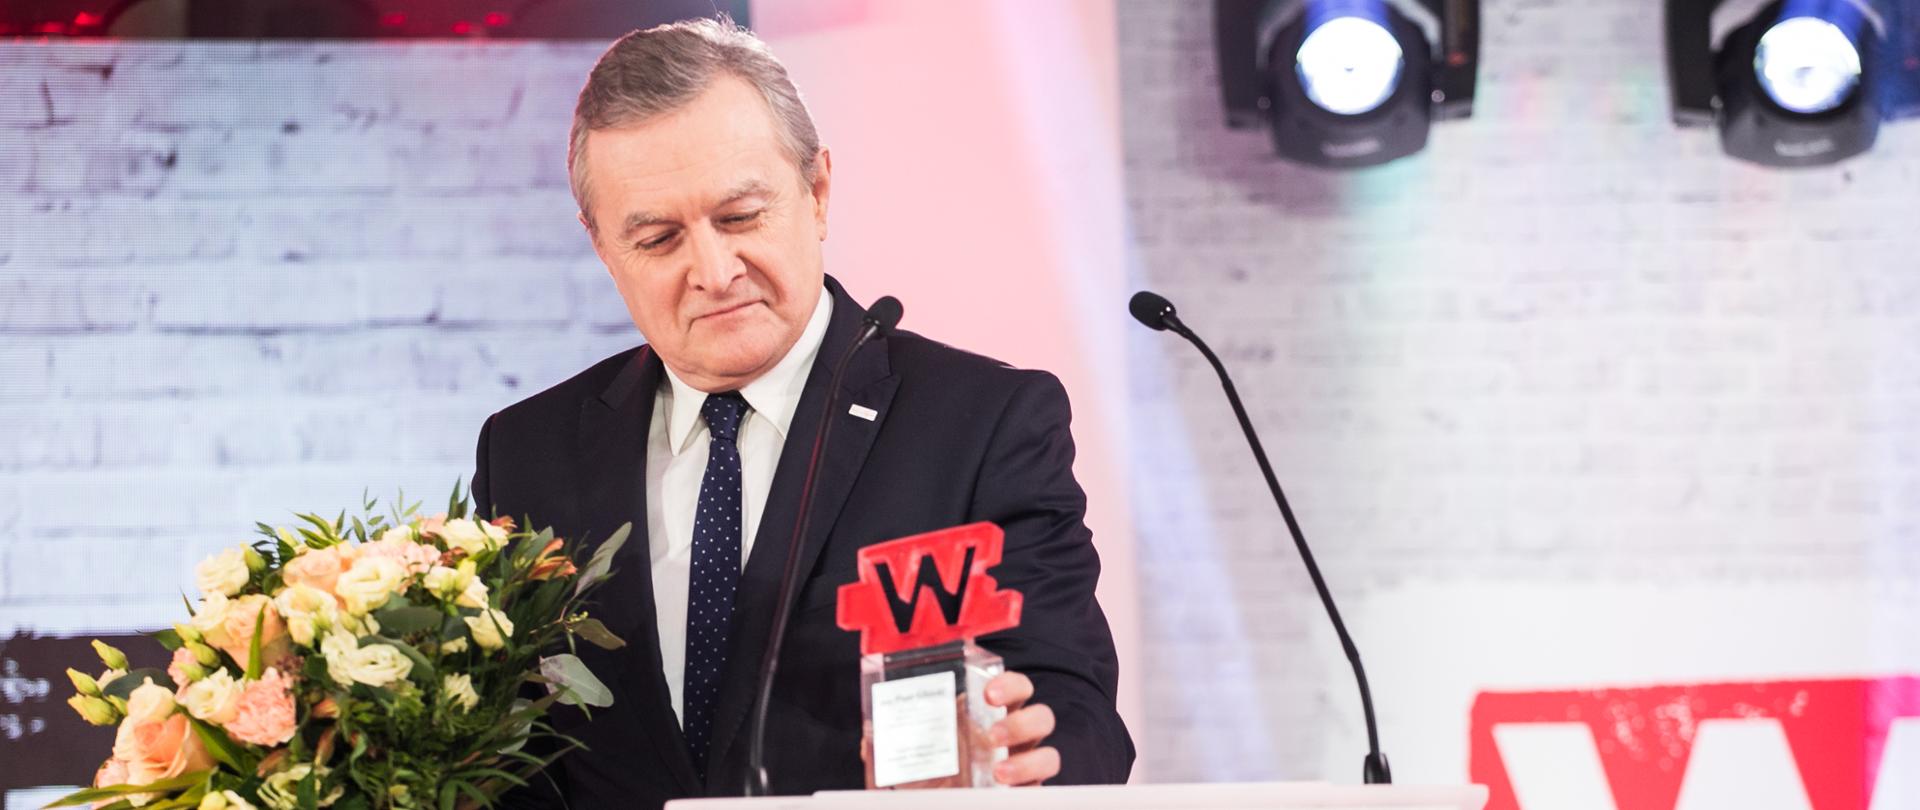 Wicepremier prof. Piotr Gliński odbiera nagrodę Człowieka Wolności fot. Danuta Matloch